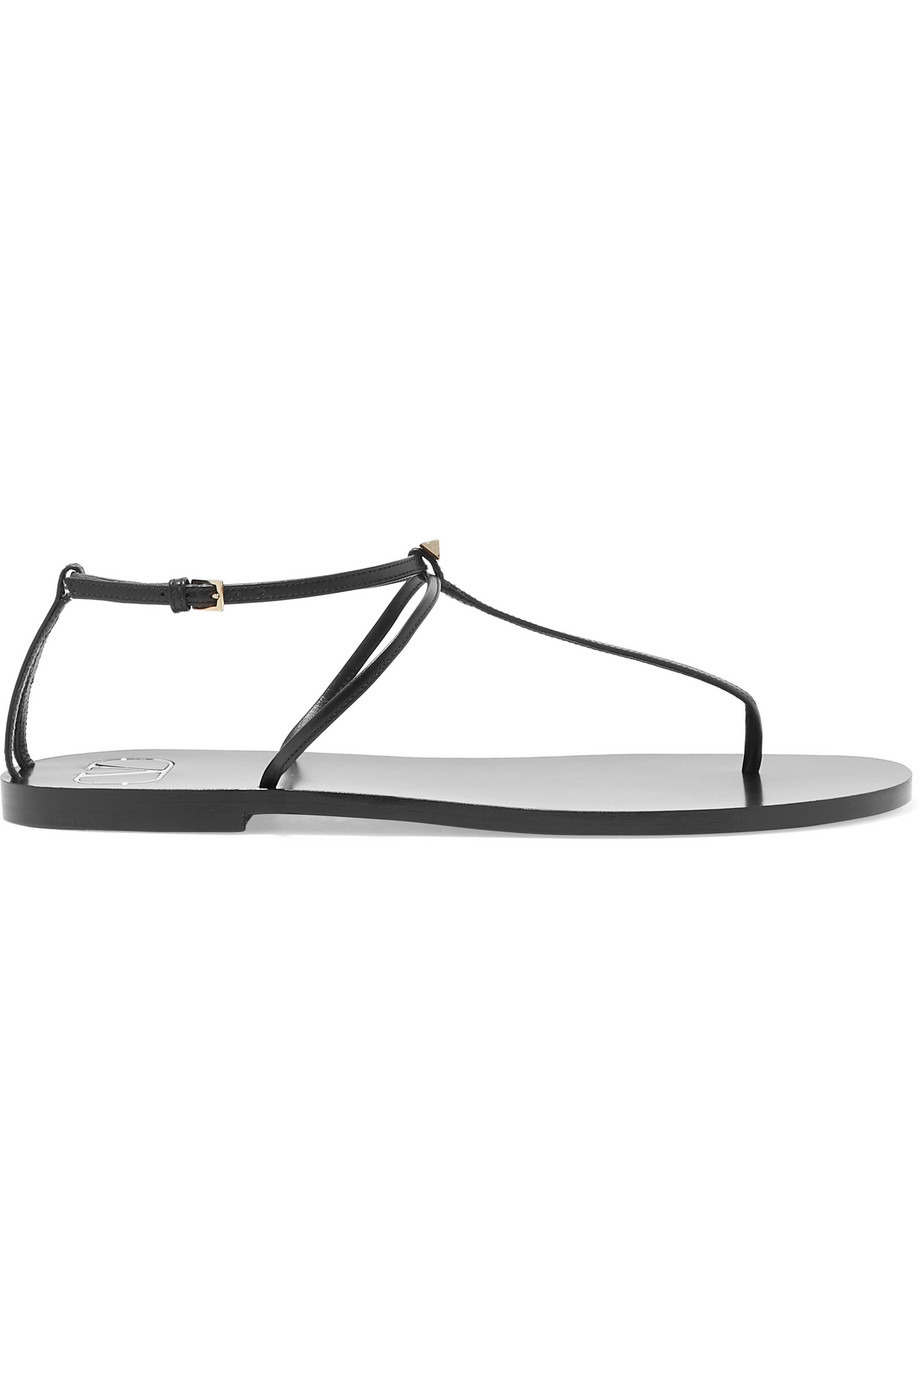 Trend Alarmı: Ultra Minimalist Sandaletler